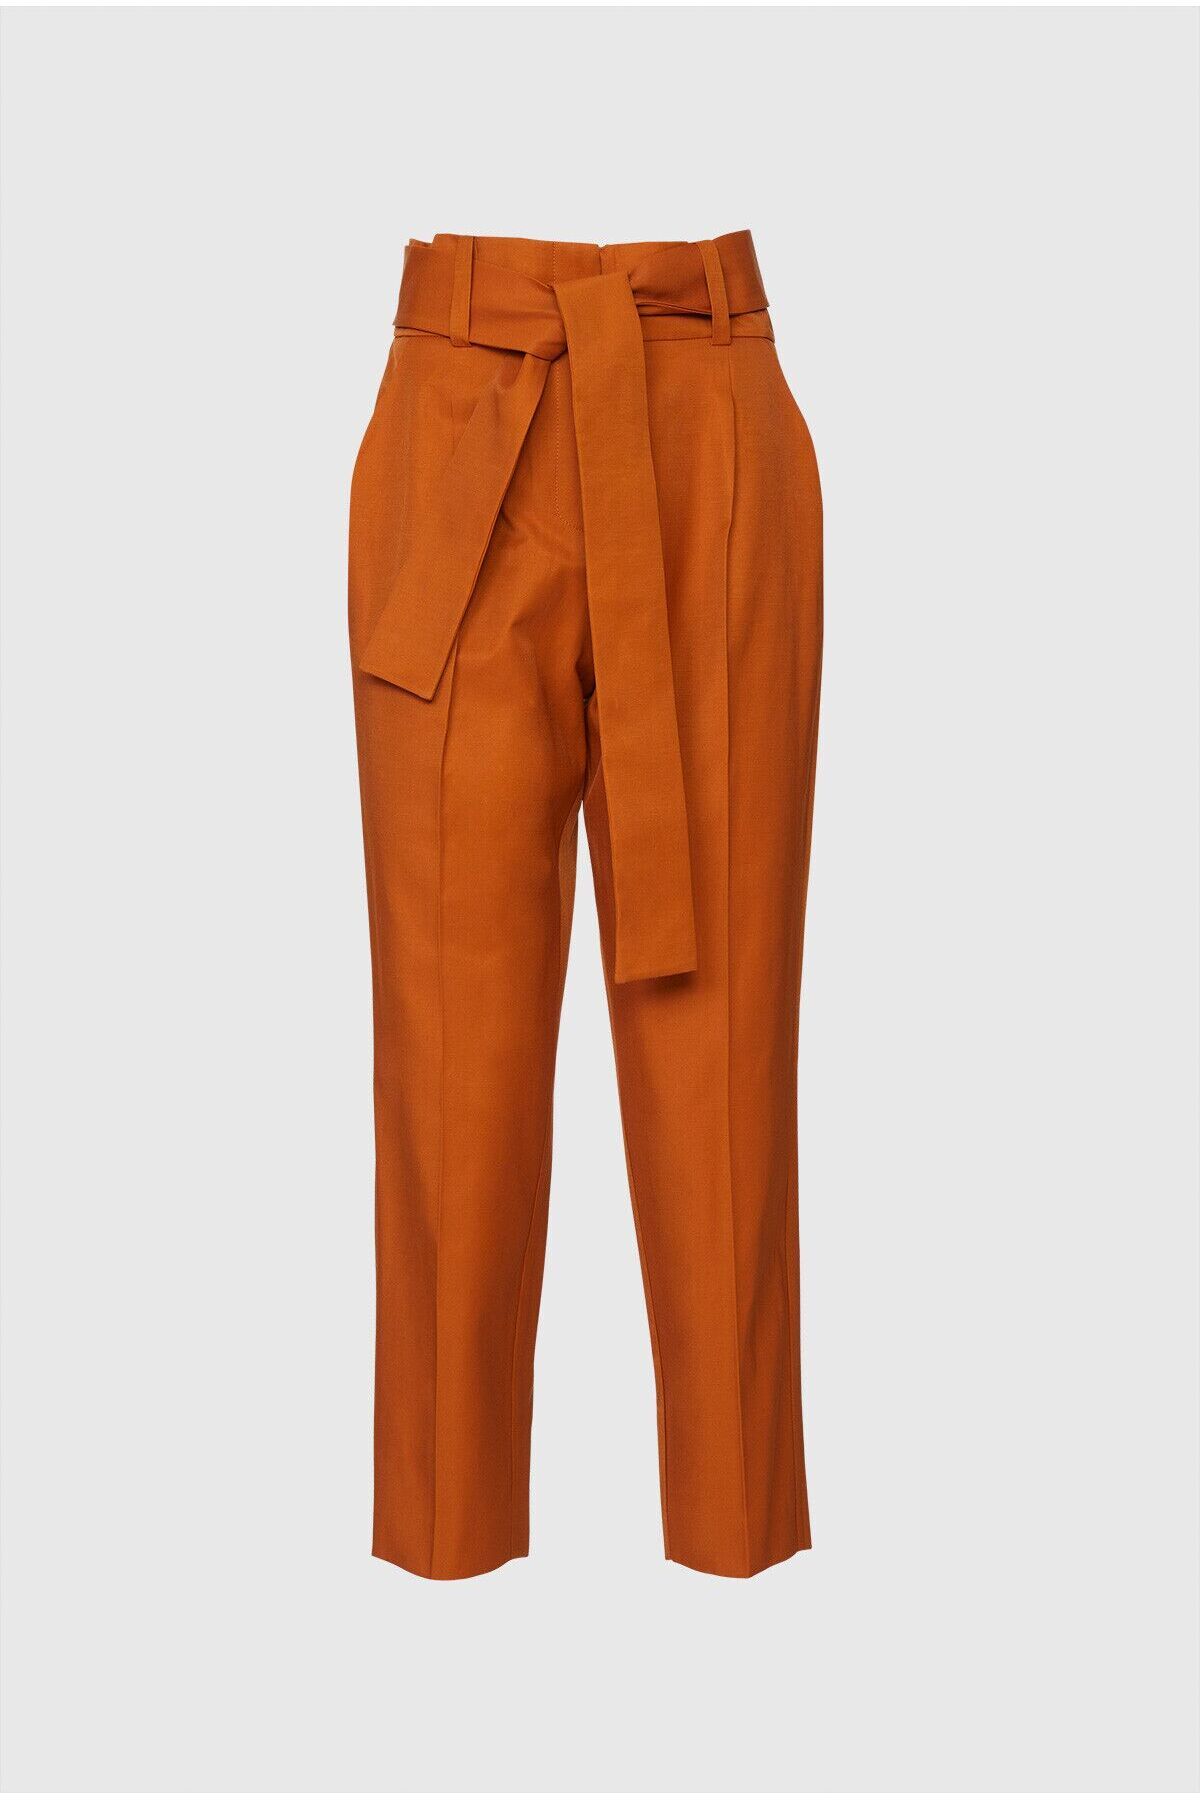 GIZIA Yüksek Bel Kuşaklı Bilek Boy Tarçın Rengi Pantolon